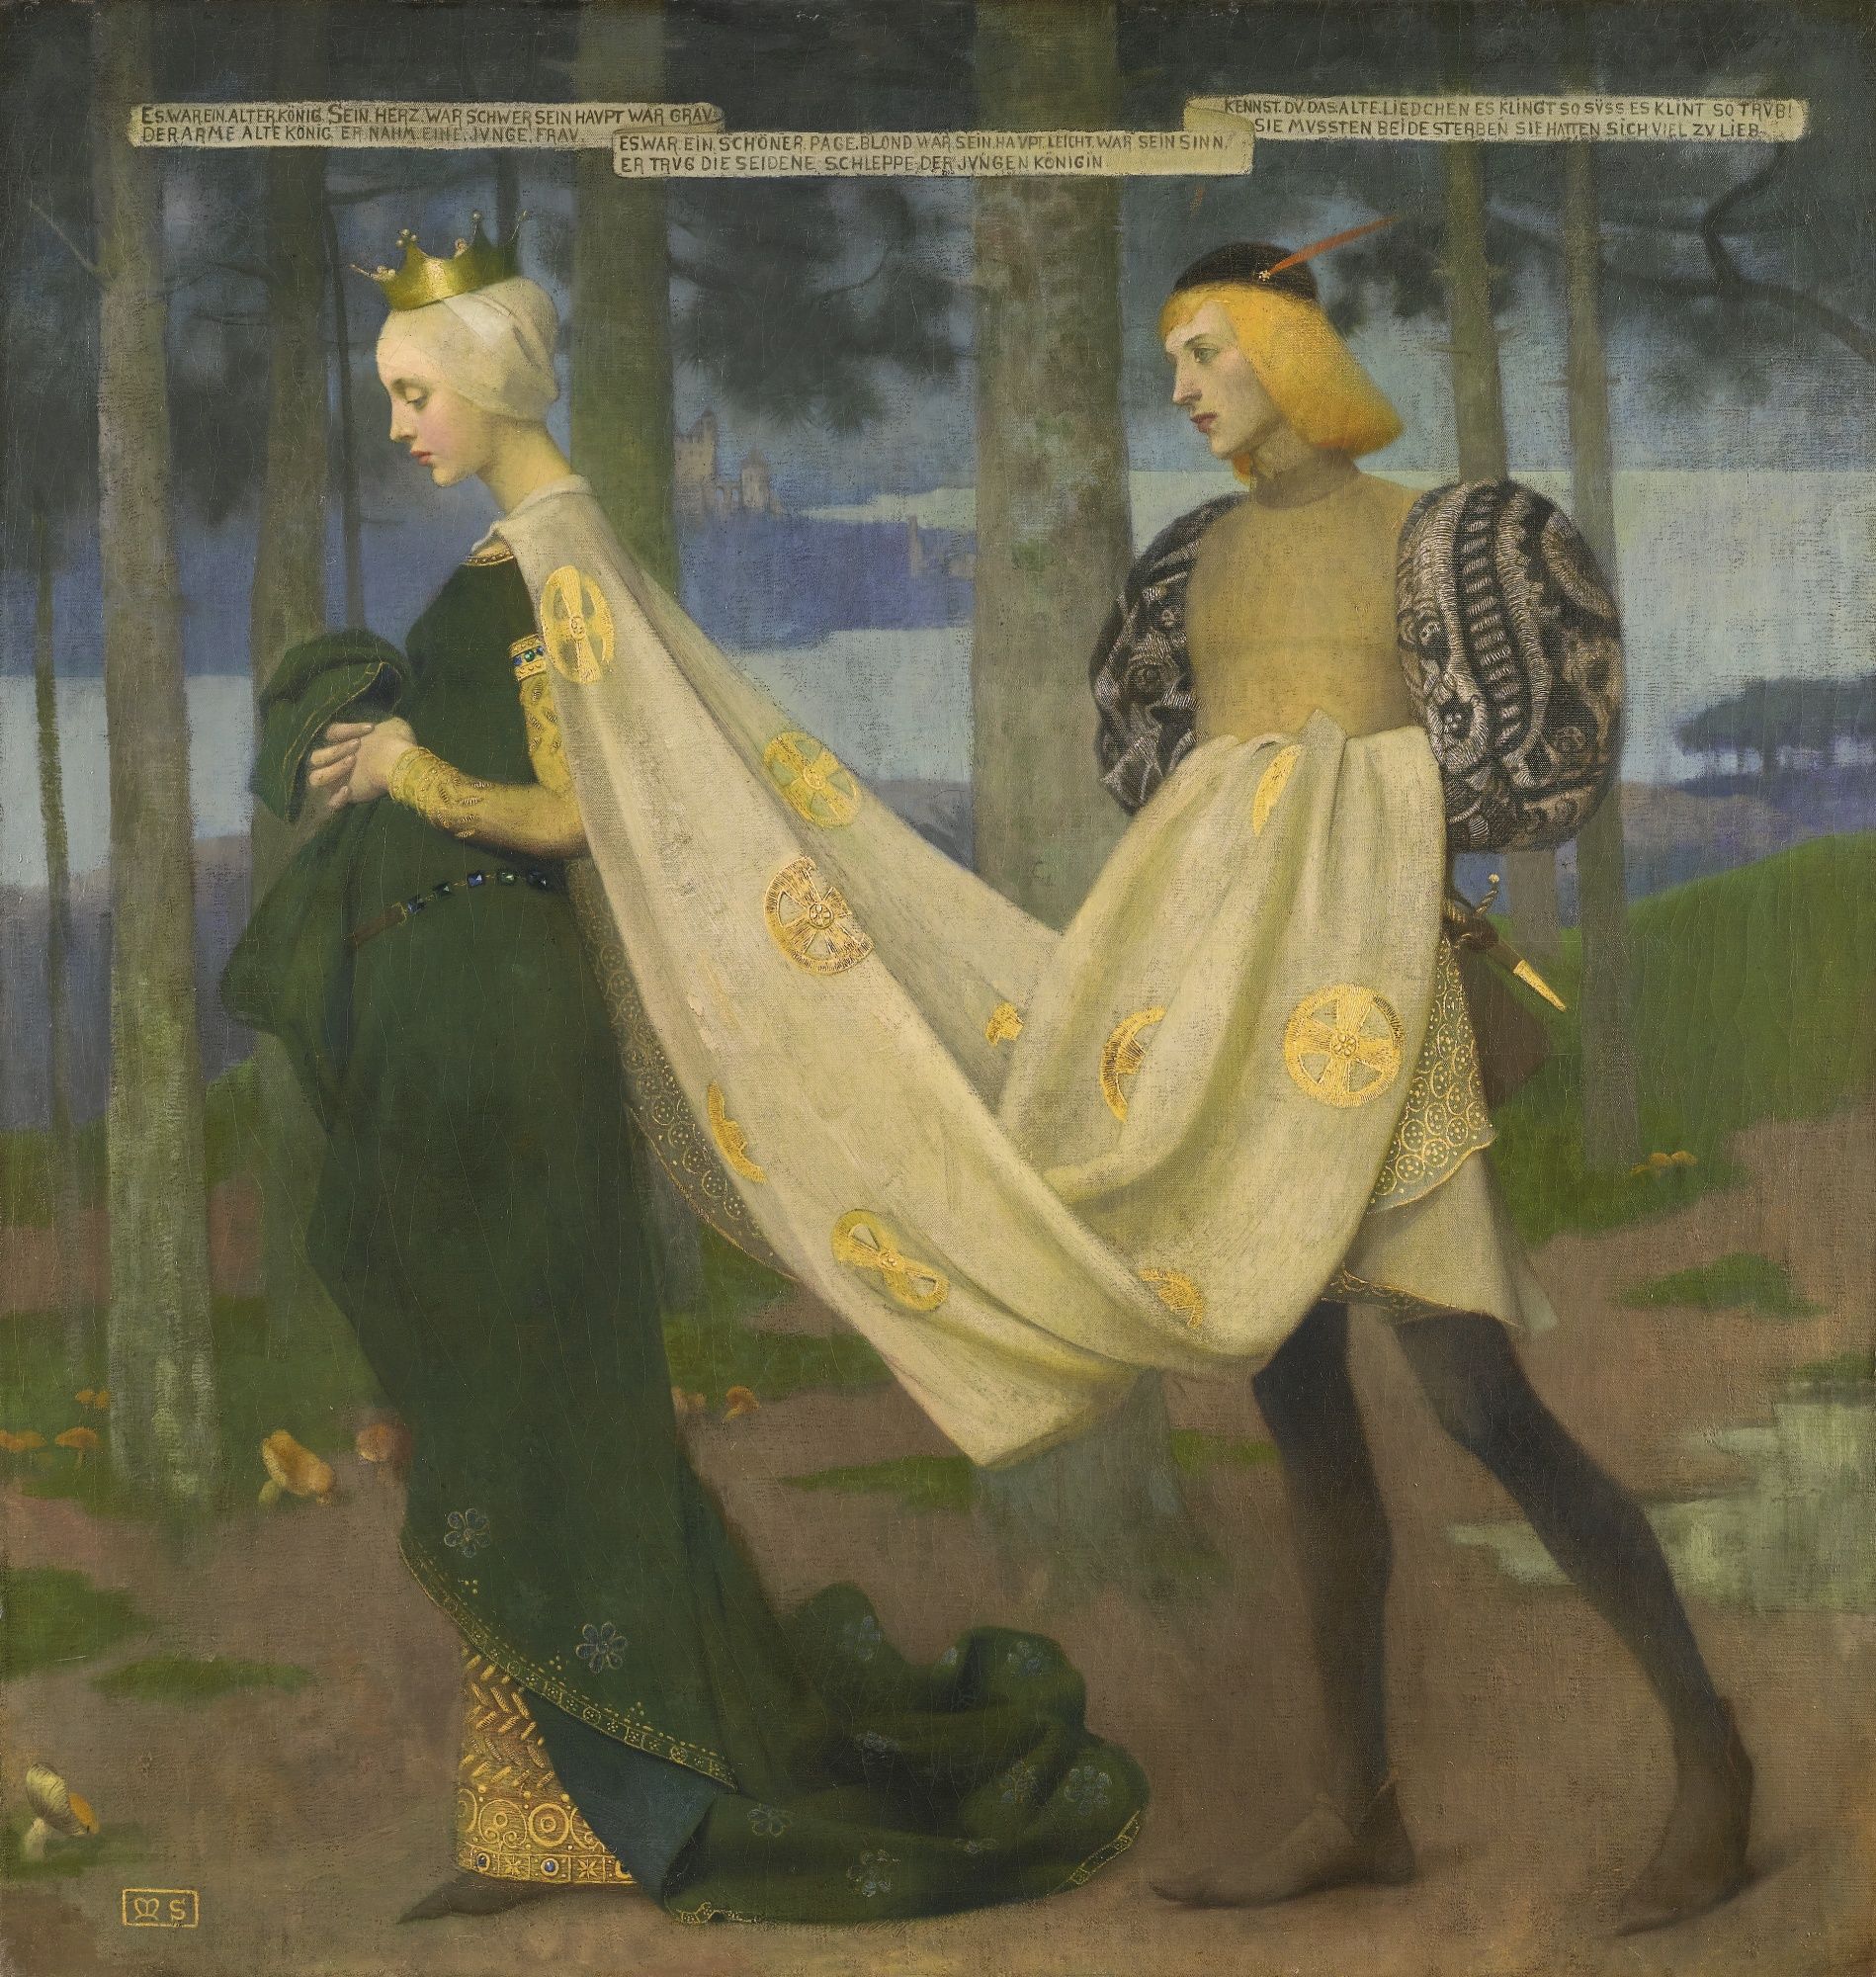 王后和侍從 by Marianne Stokes - 1896 - 101 x 96.5 cm 